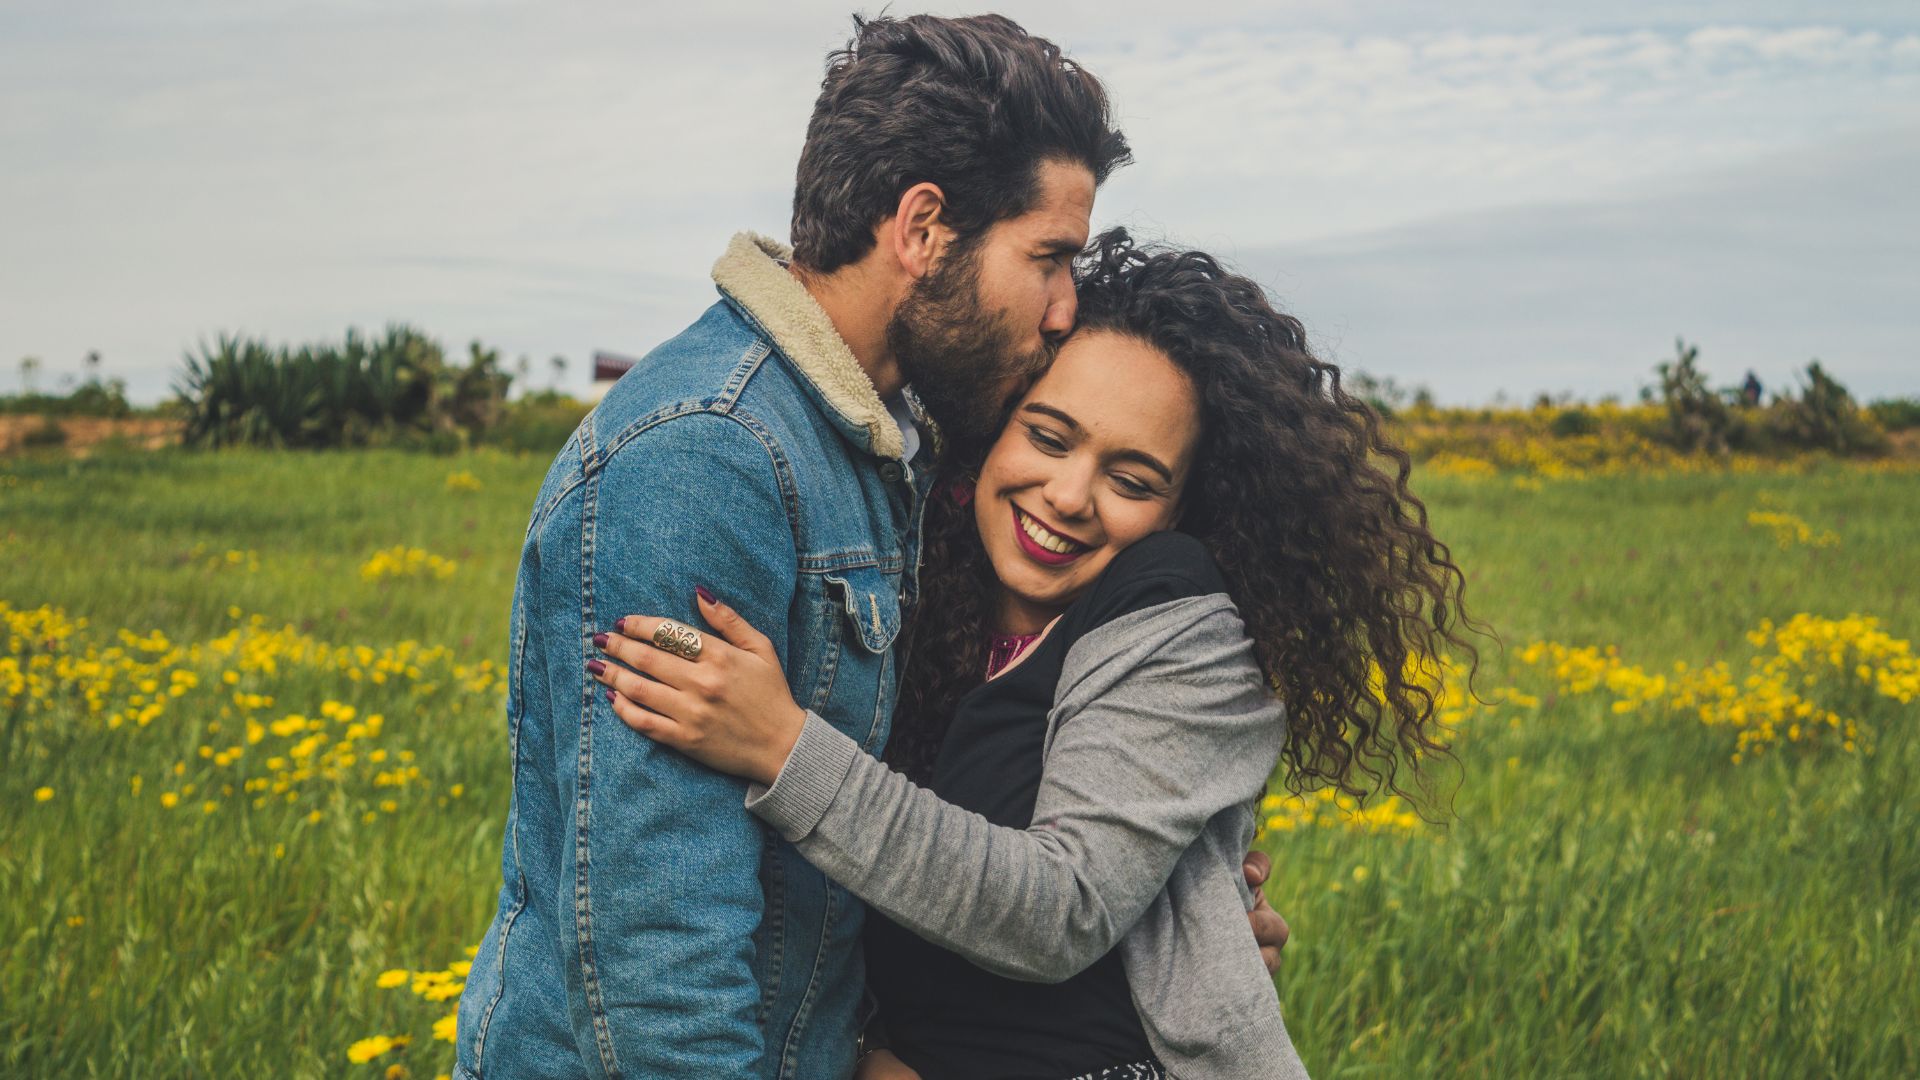 Imagem de um homem beijando o rosto de uma mulher que está sorrindo, em um campo com flores amarelas ao fundo